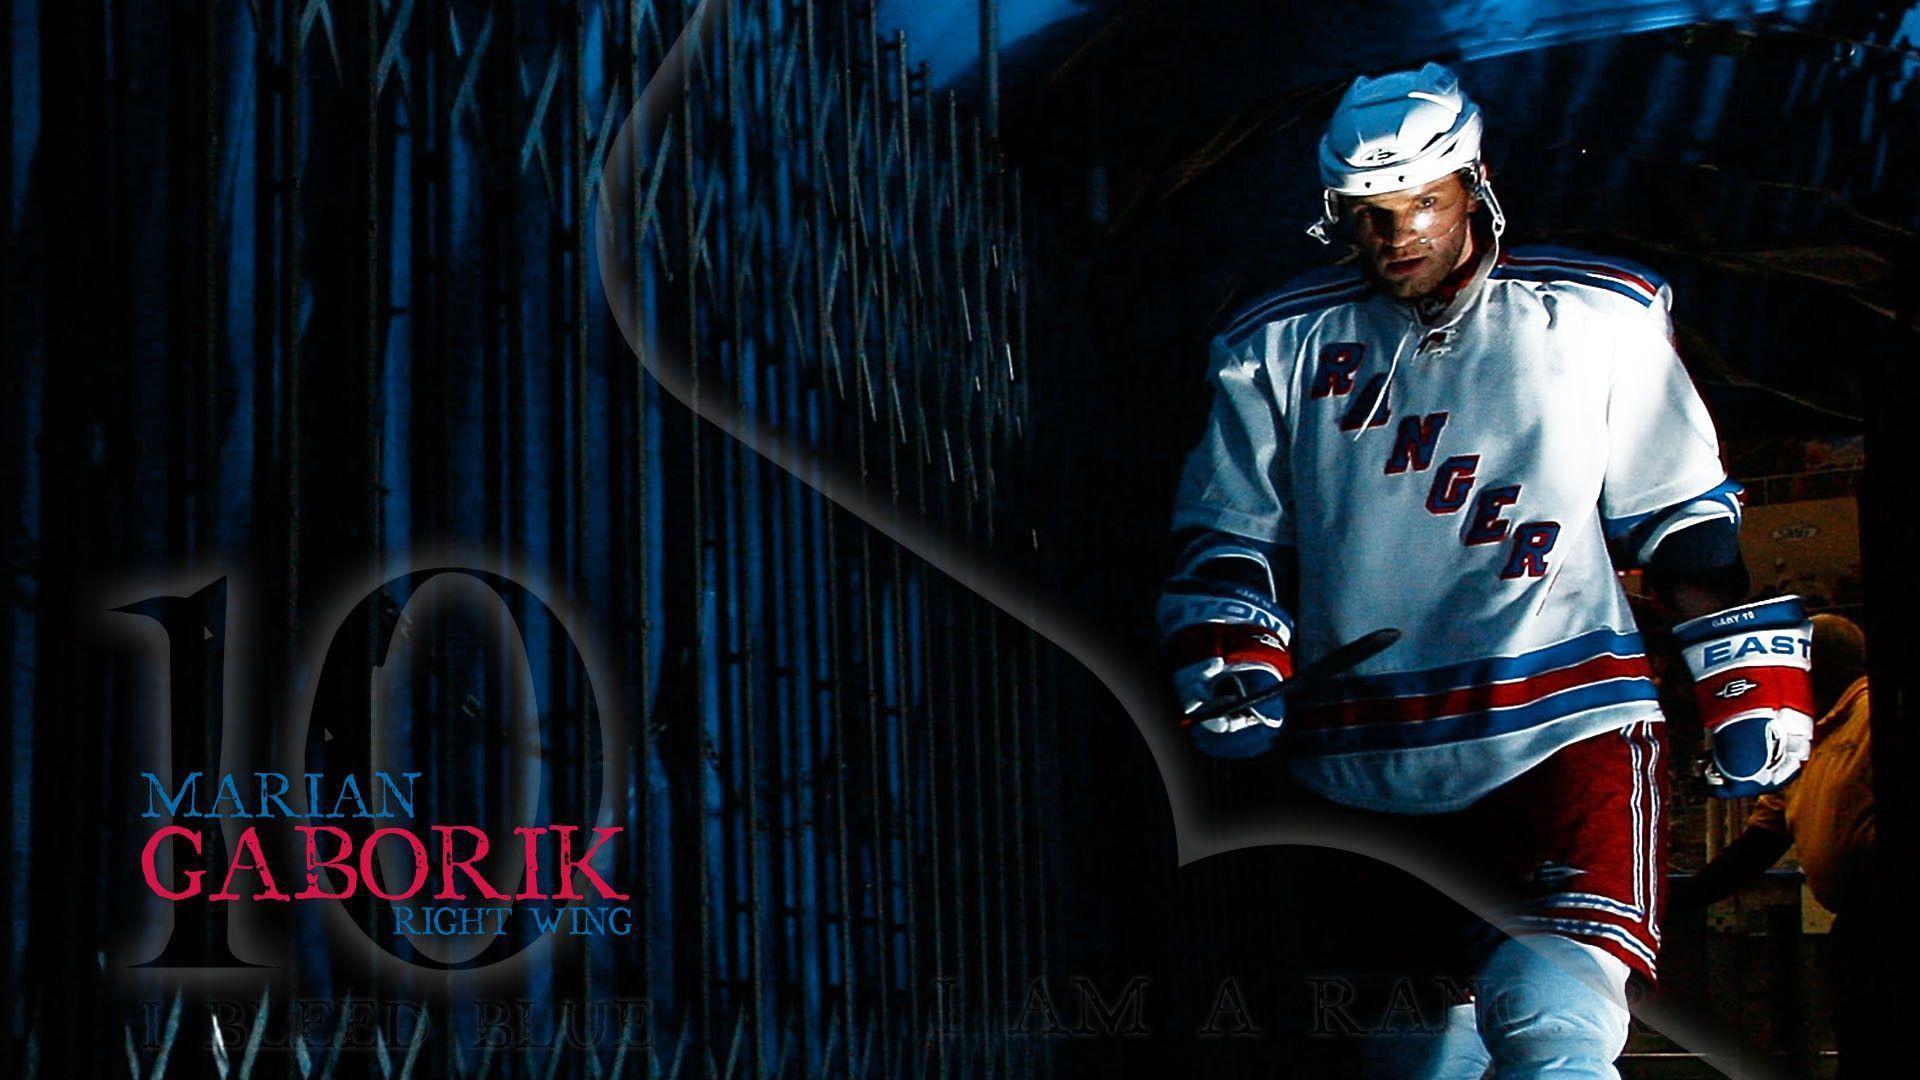 New New York Rangers background. New York Rangers wallpaper